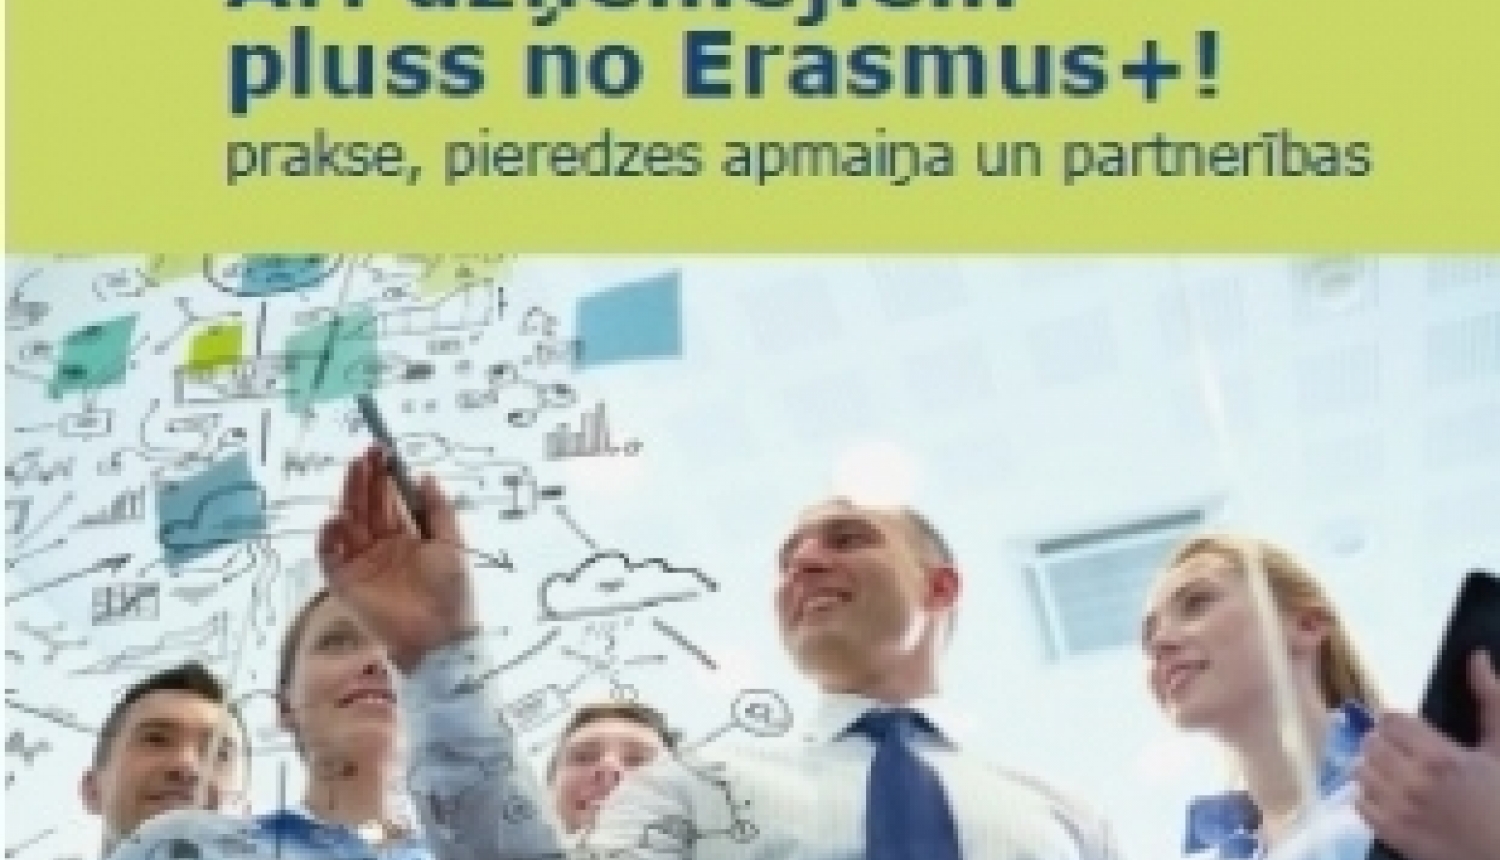 Publicēts informatīvs materiāls par uzņēmēju iespējām Erasmus+